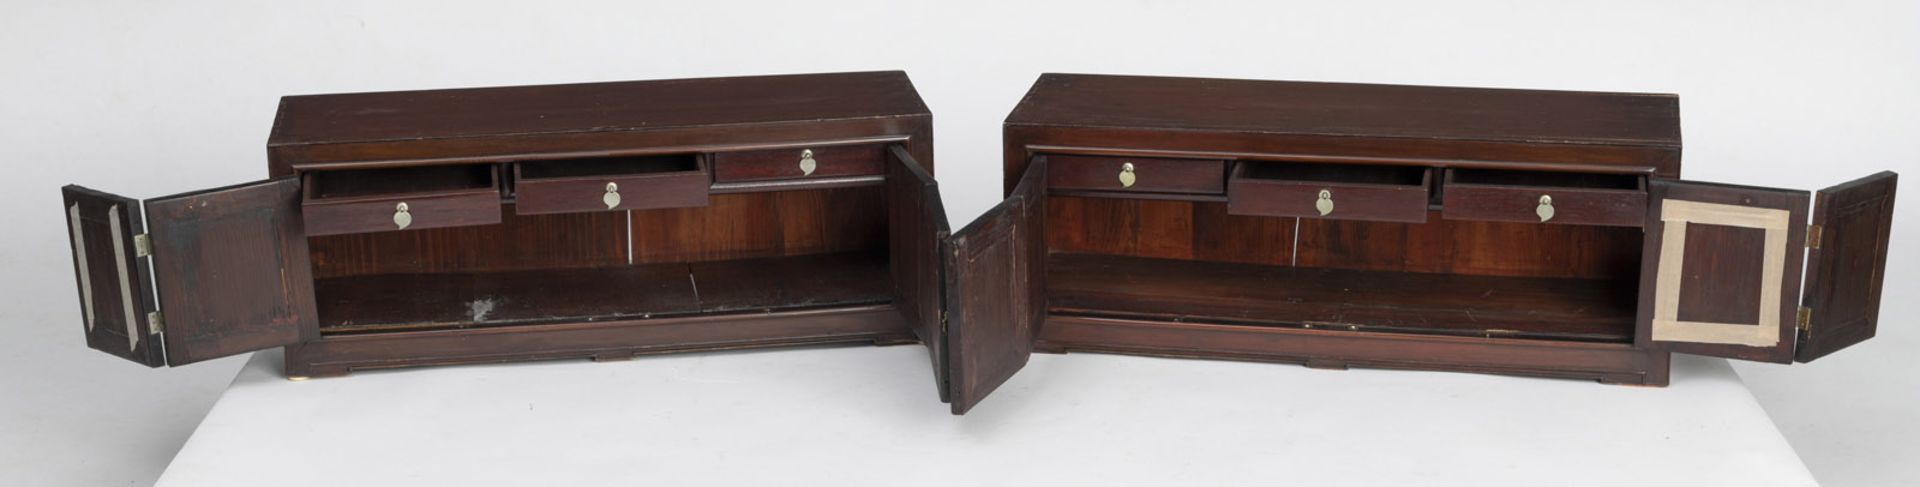 Paar flache Holz-Schränke (mungab), jeweils mit zweiteiligen klappbaren Türen, mit Marmorpaneelen e - Bild 2 aus 8